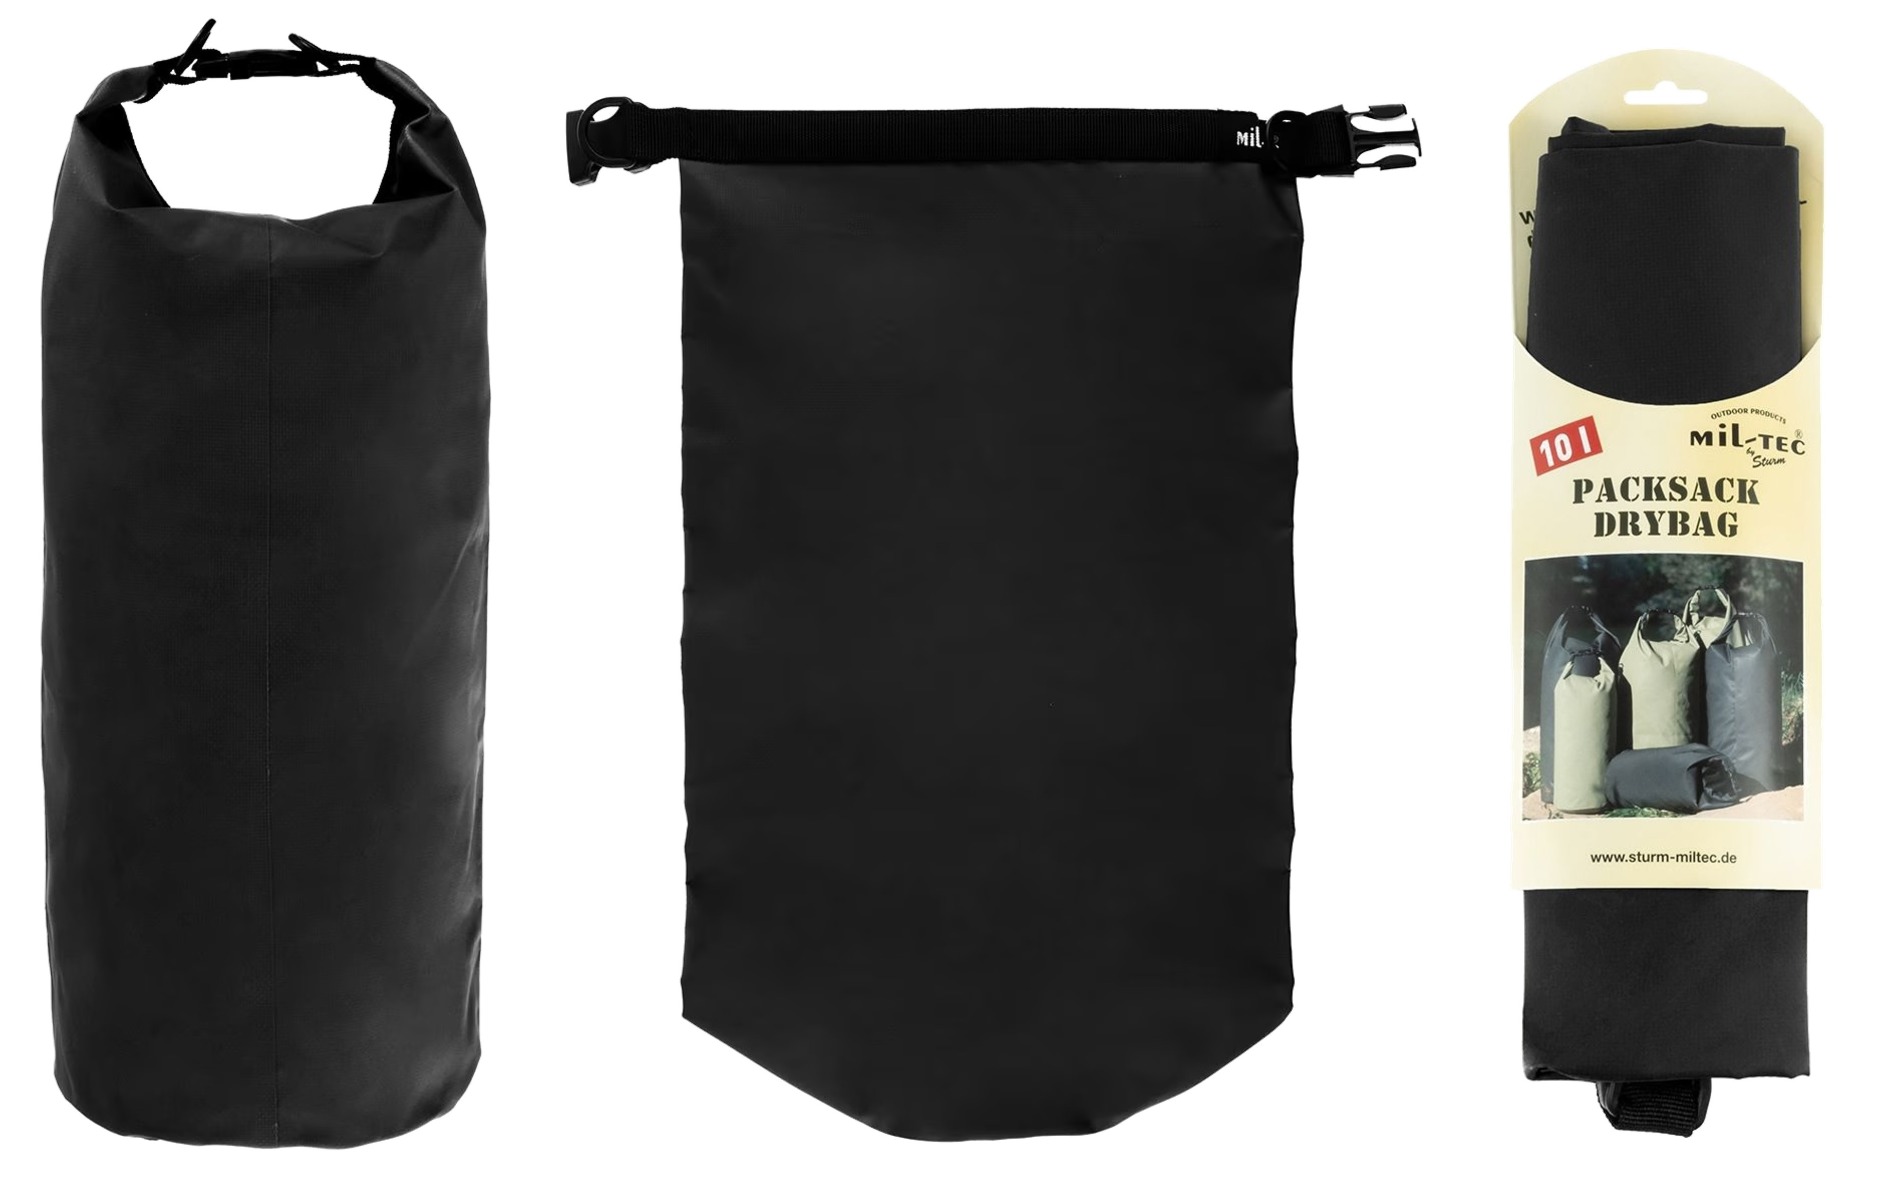  Zaščitite svoje dragocene stvari pred vlago in prahom s Dry Bag 10 - vrhunsko nepremočljivo vrečo z 10-litrsko prostornino, idealno za nahrbtnike majhnega volumna. Uživajte v suhih in varnih pohodih, potovanjih in vodnih športih. Nakupujte sedaj!